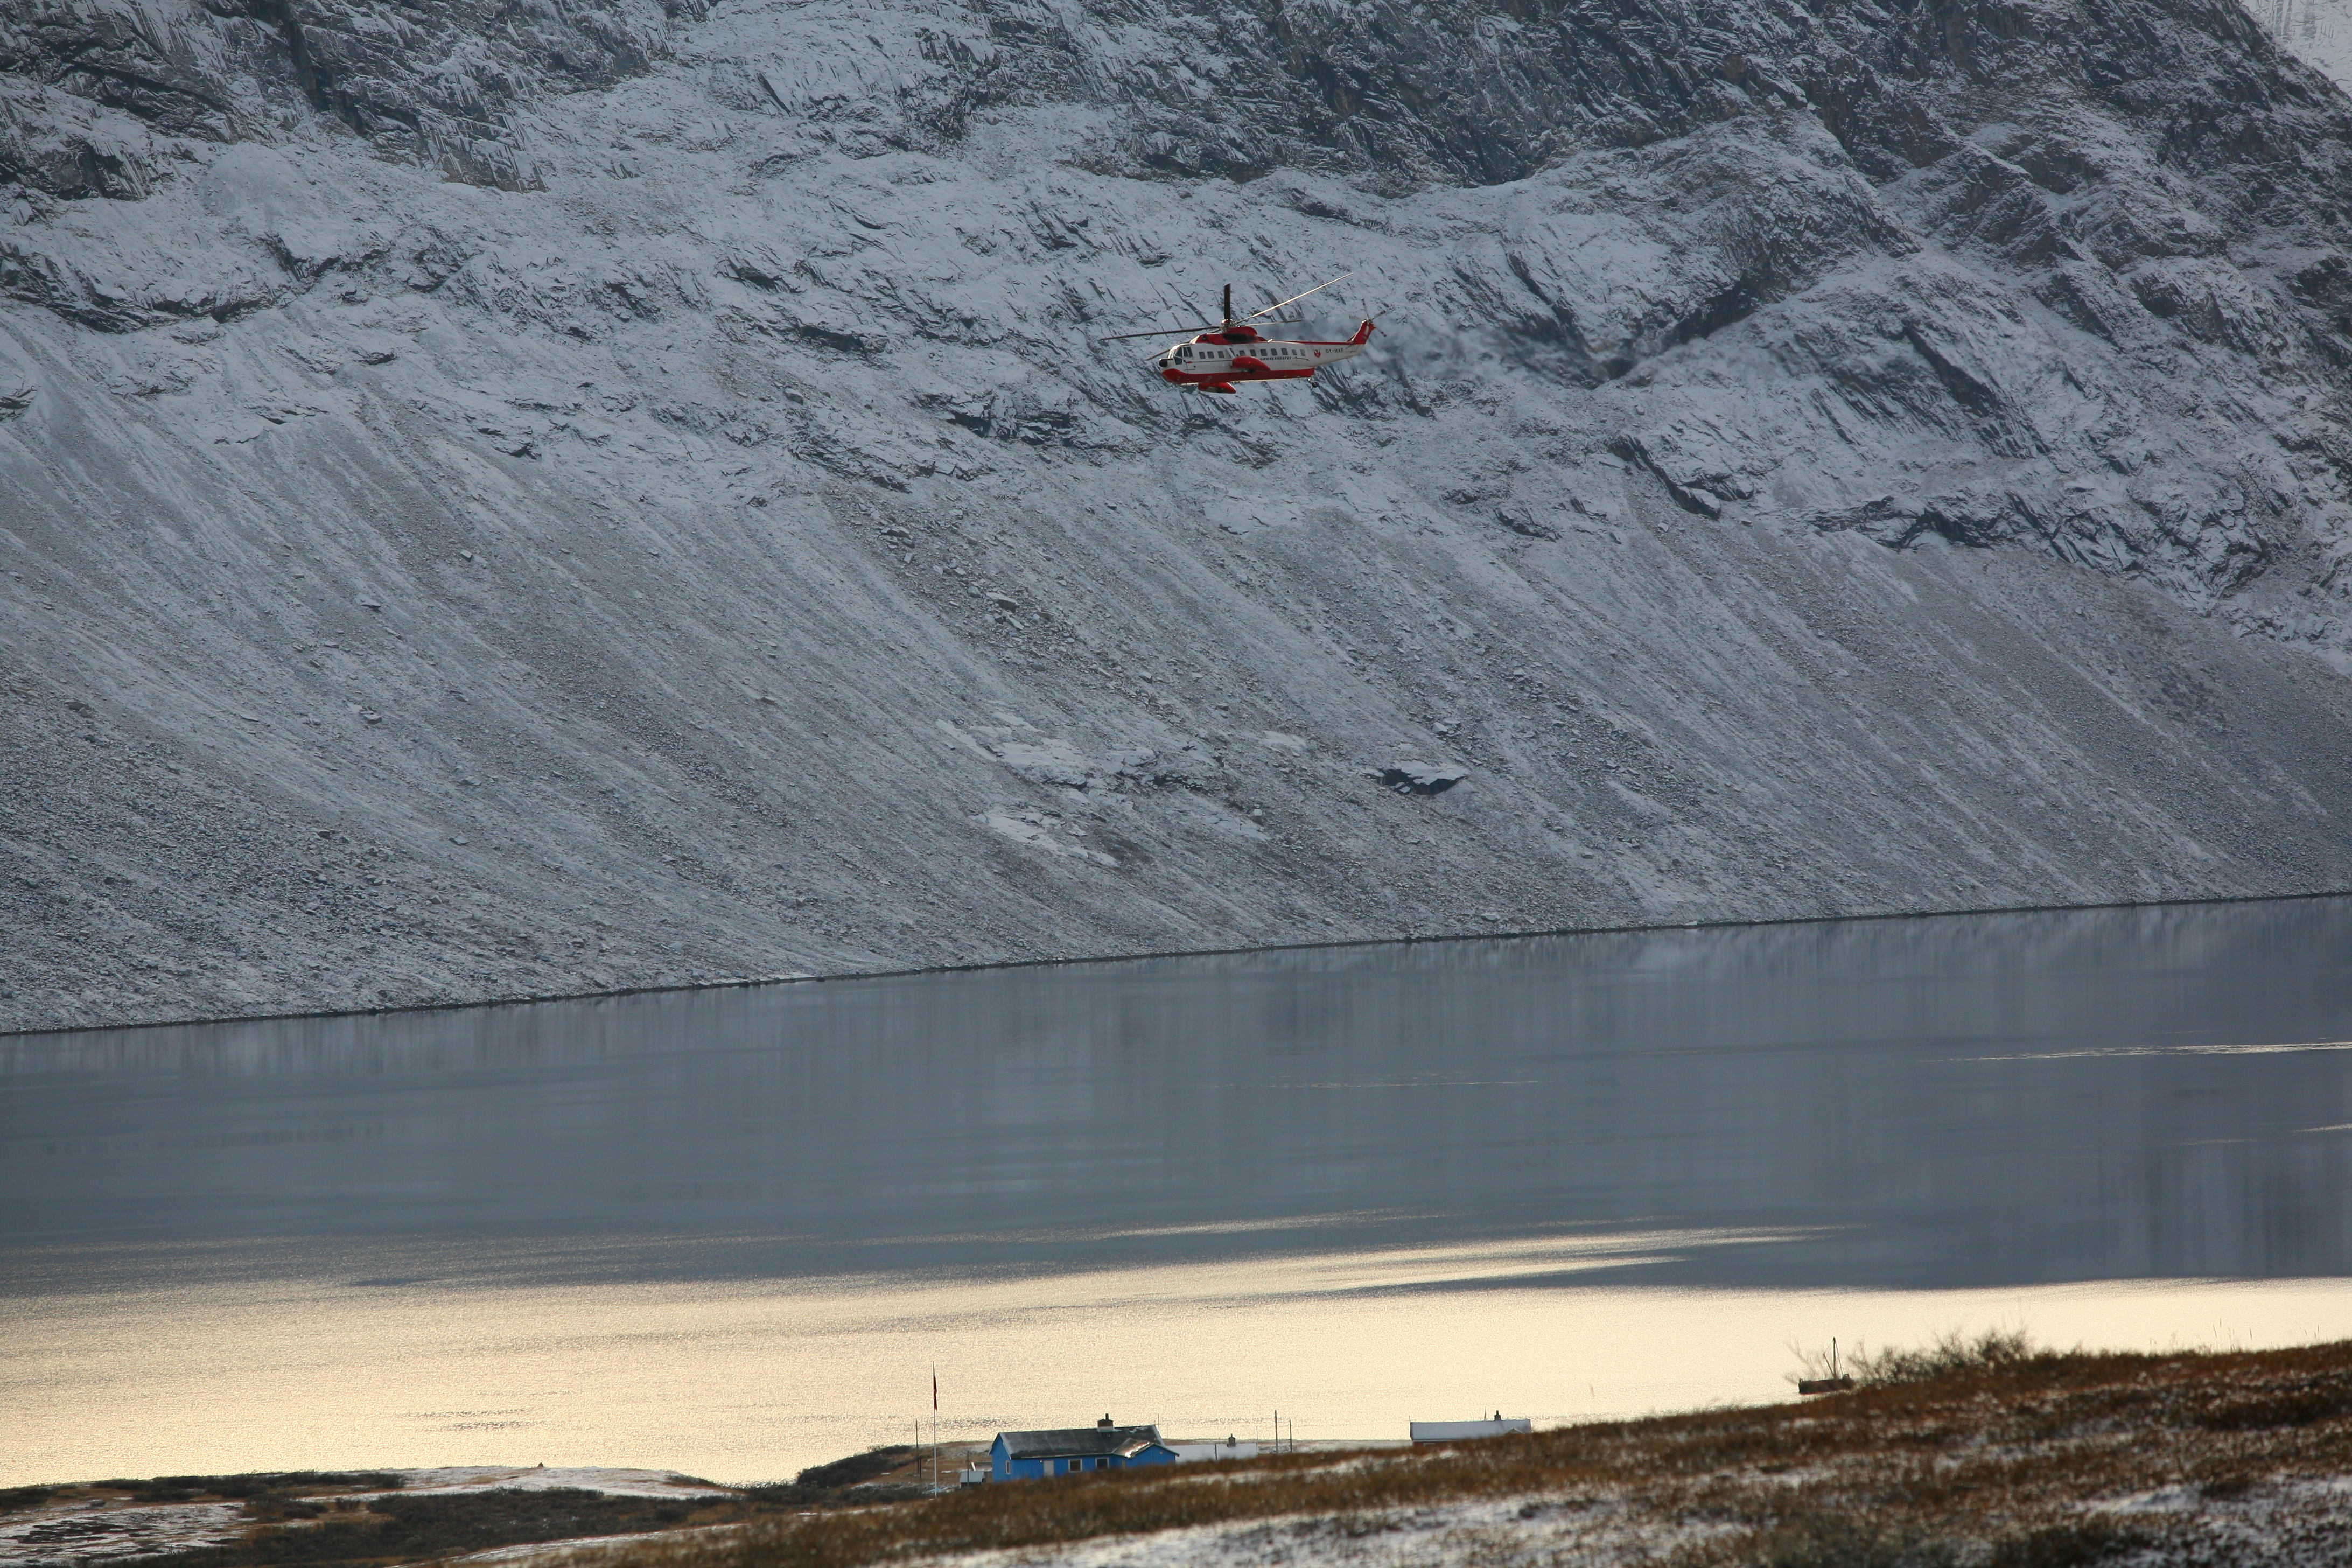 heli in the fjordsystem